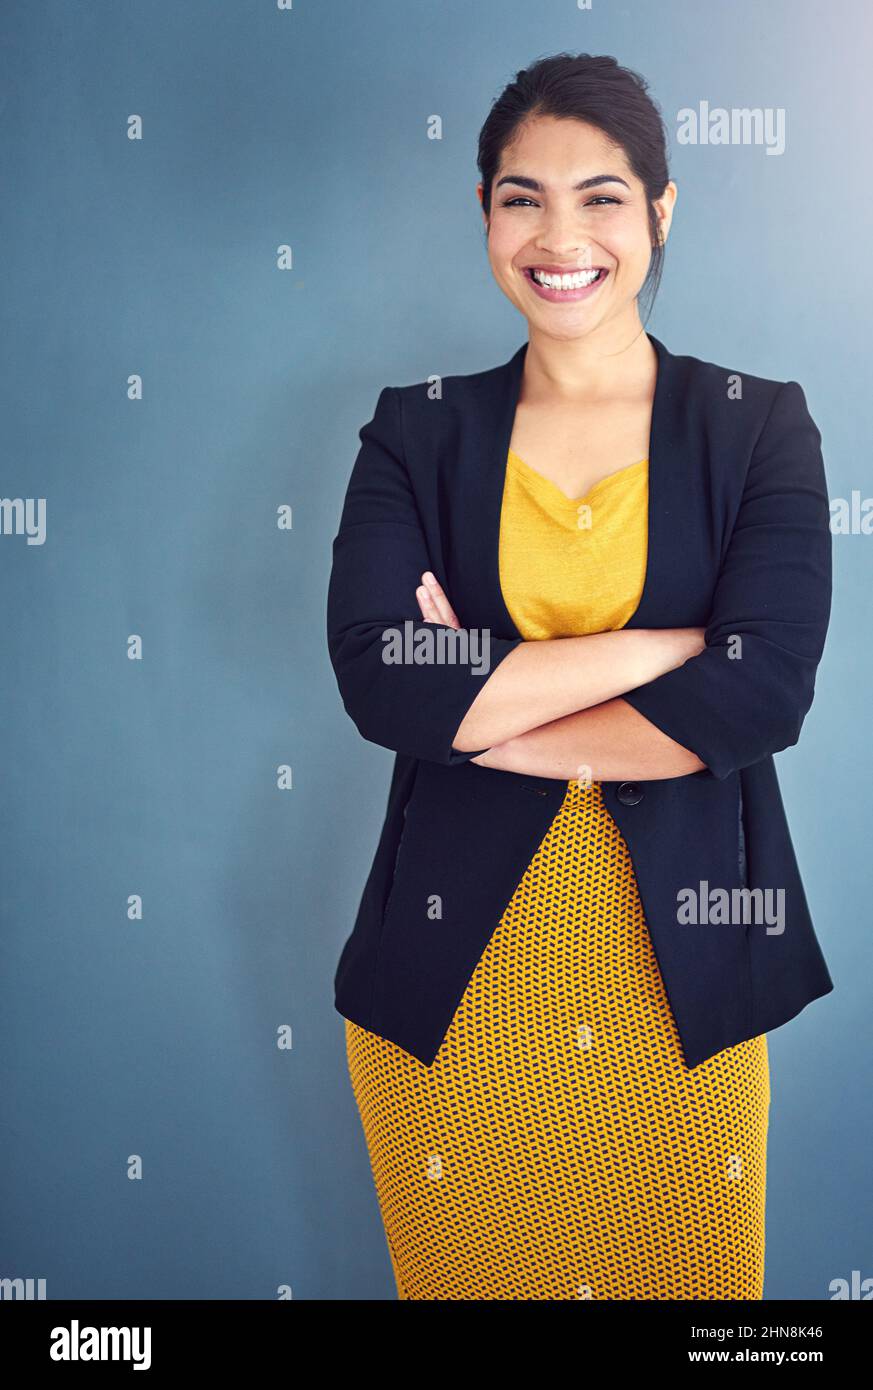 La confiance est la clé du succès. Portrait en studio d'une jeune femme d'affaires attirante debout sur fond bleu. Banque D'Images